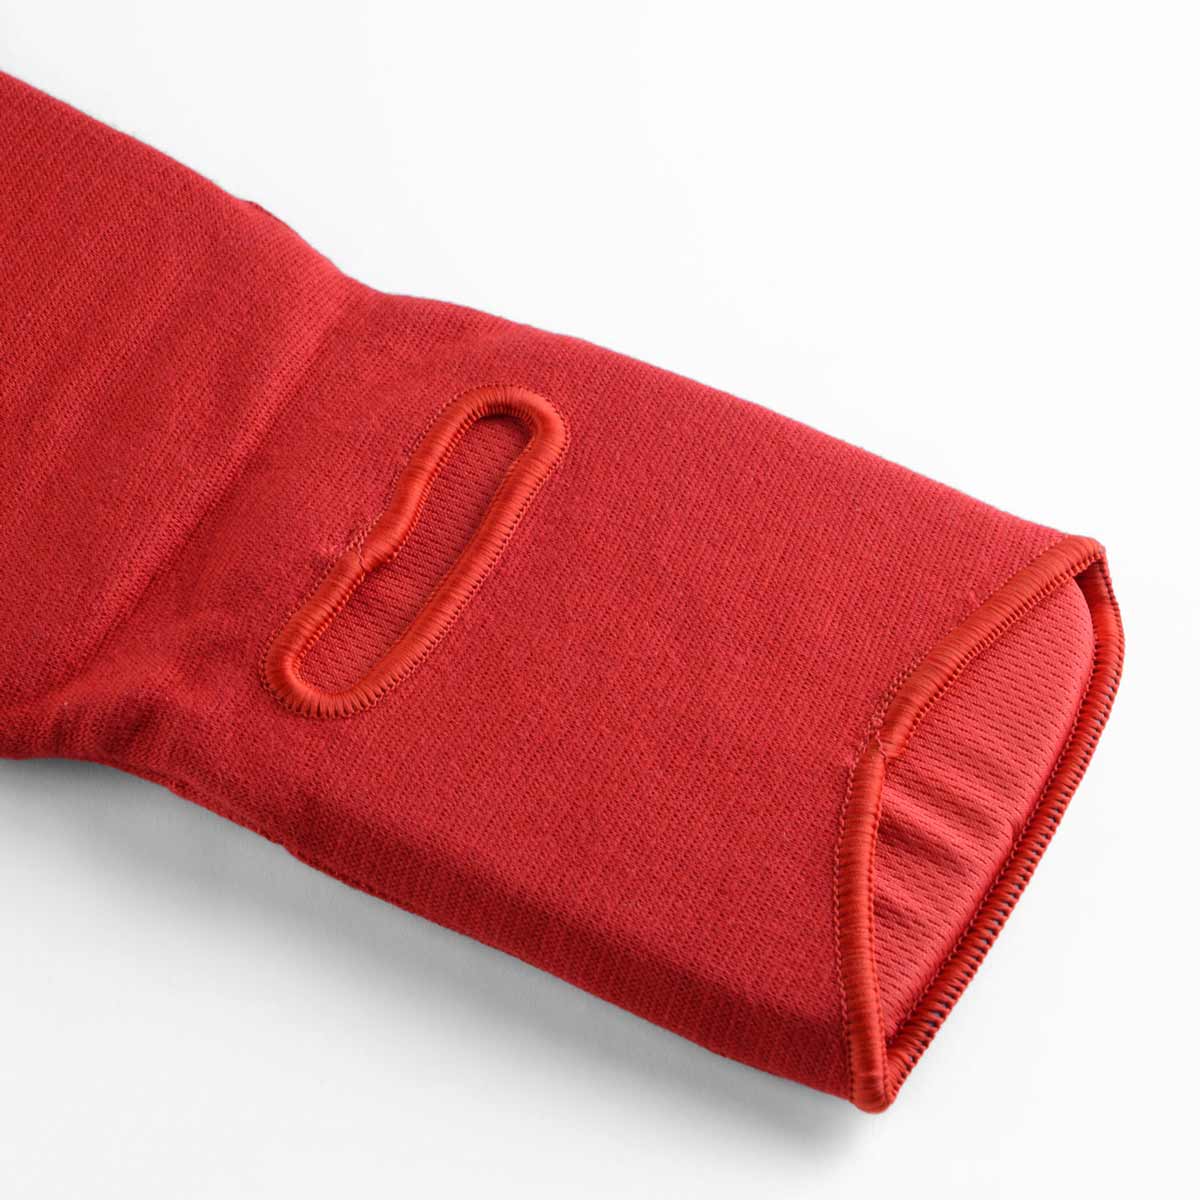 Die Innenseite der Phantom Impact MMA Schienbeinschoner in Rot ist mit angenehmen Mesh Material ausgestattet welches Luftdurchlässig ist und somit super angenehm im Kampfsporttraining zu tragen.